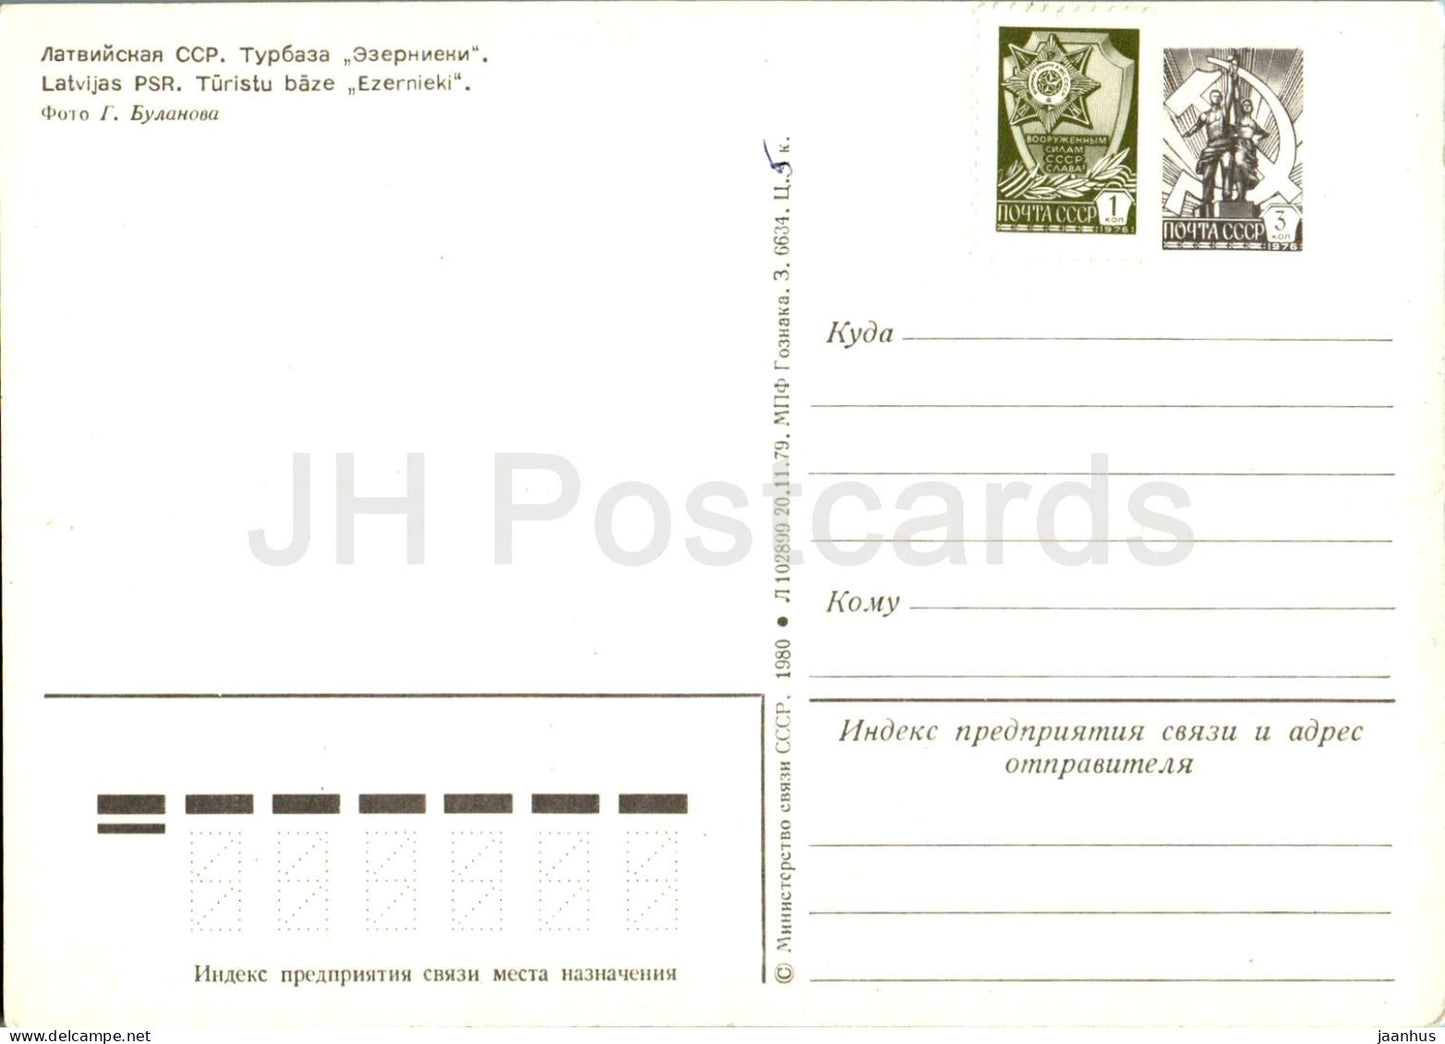 Tourist Base Ezernieki - postal stationery - 1980 - Latvia USSR - unused